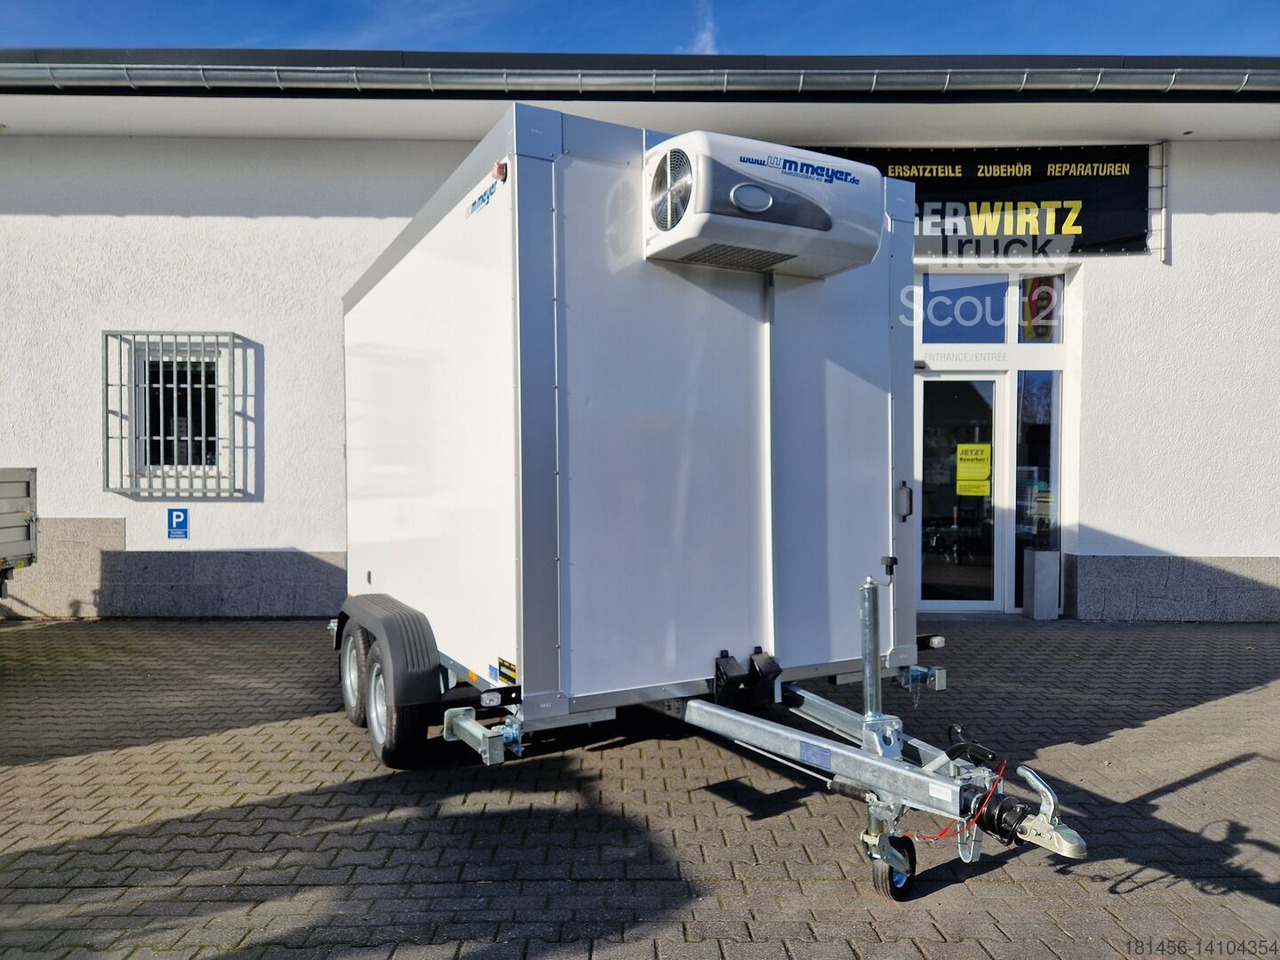 Wm Meyer Tiefkühlanhänger direkt verfügbar AZK 2734/180 336x170x200cm 100 isolierung Govi 230V Kühlung - Refrigerator trailer: picture 2